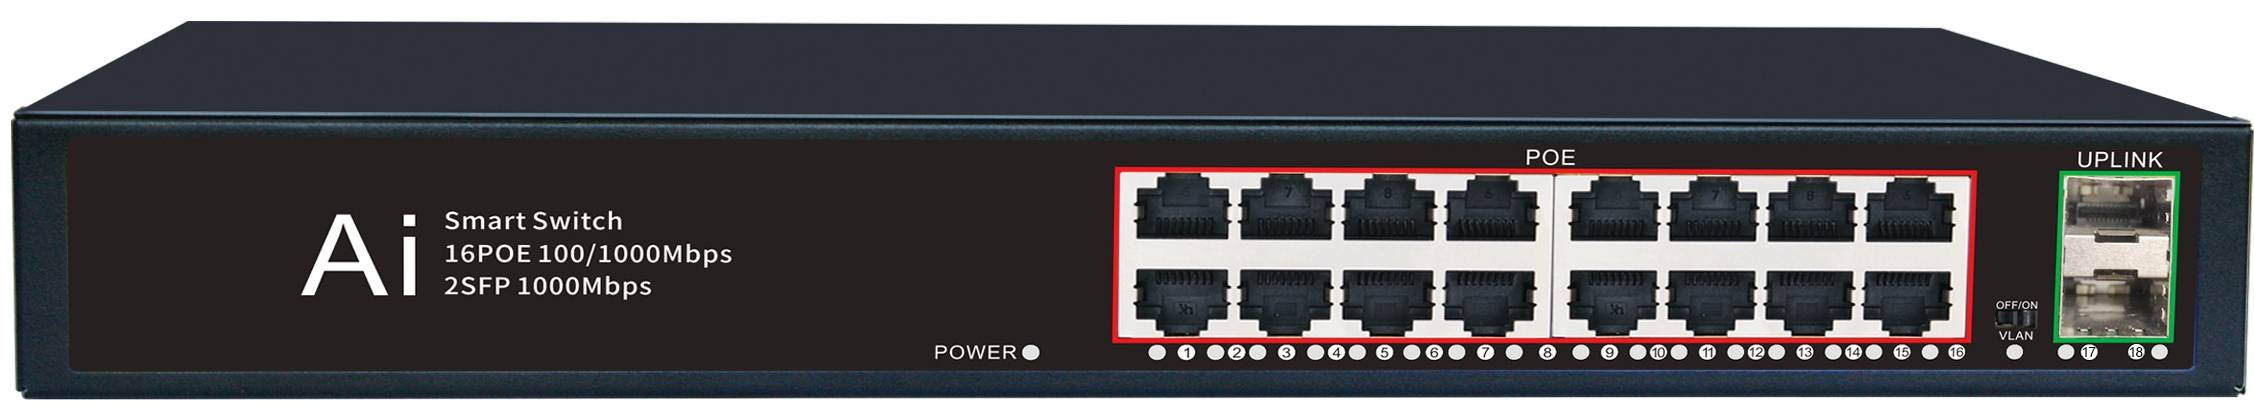 China Wholesale Un-Management Poe Switch Factory Suppliers - 16 Ports 10/100/1000M PoE Port+2 Gigabit SFP Fiber Port, Smart PoE Switch JHA-P420016BMH – JHA